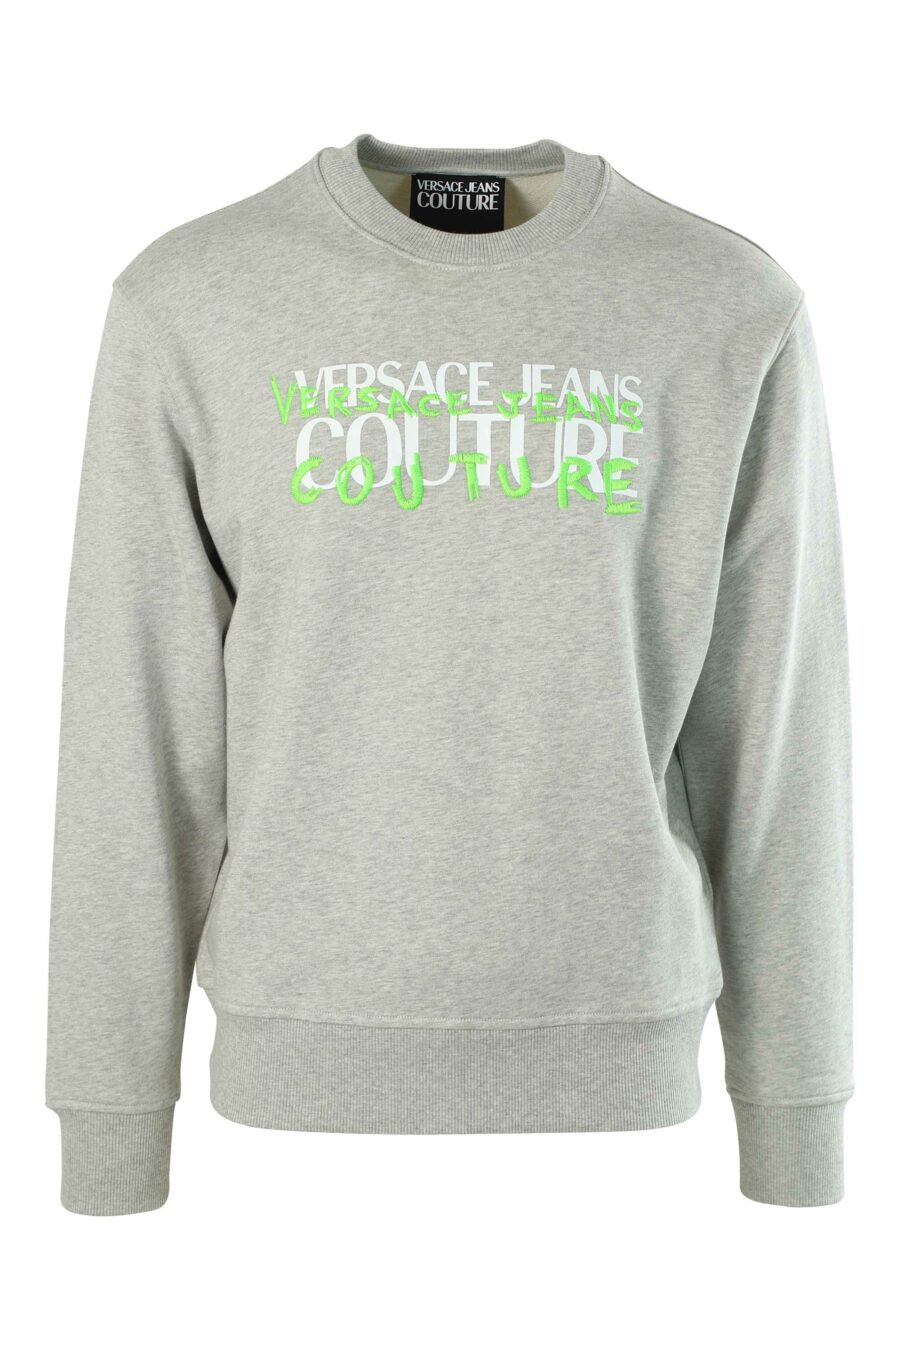 Graues Sweatshirt mit grünem, verflochtenem Logo - 8052019239027